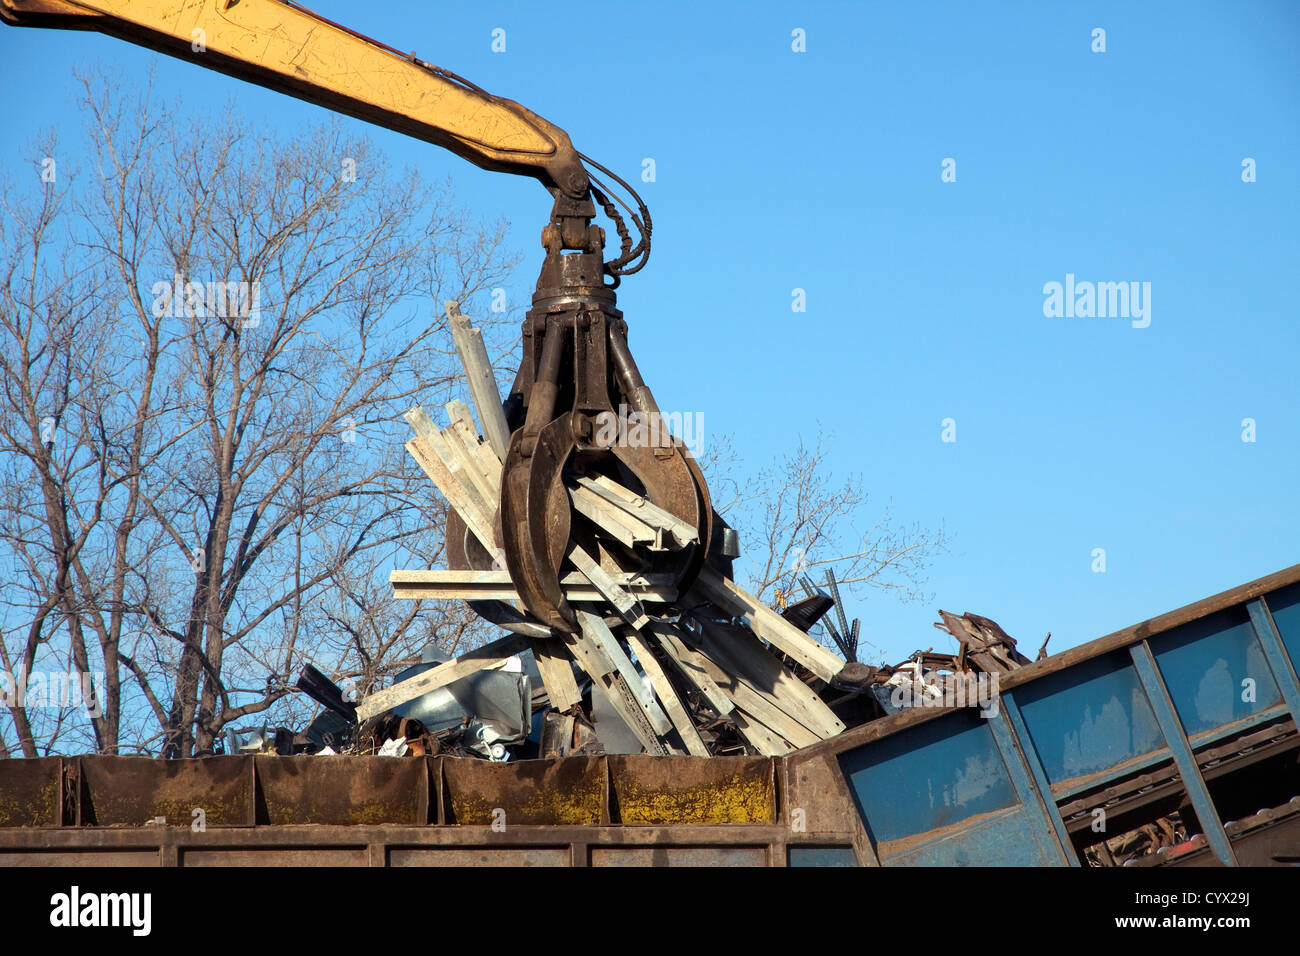 Lidiando grúa colocando objetos metálicos en Shredder en planta de reciclaje de metales e EE.UU. Foto de stock